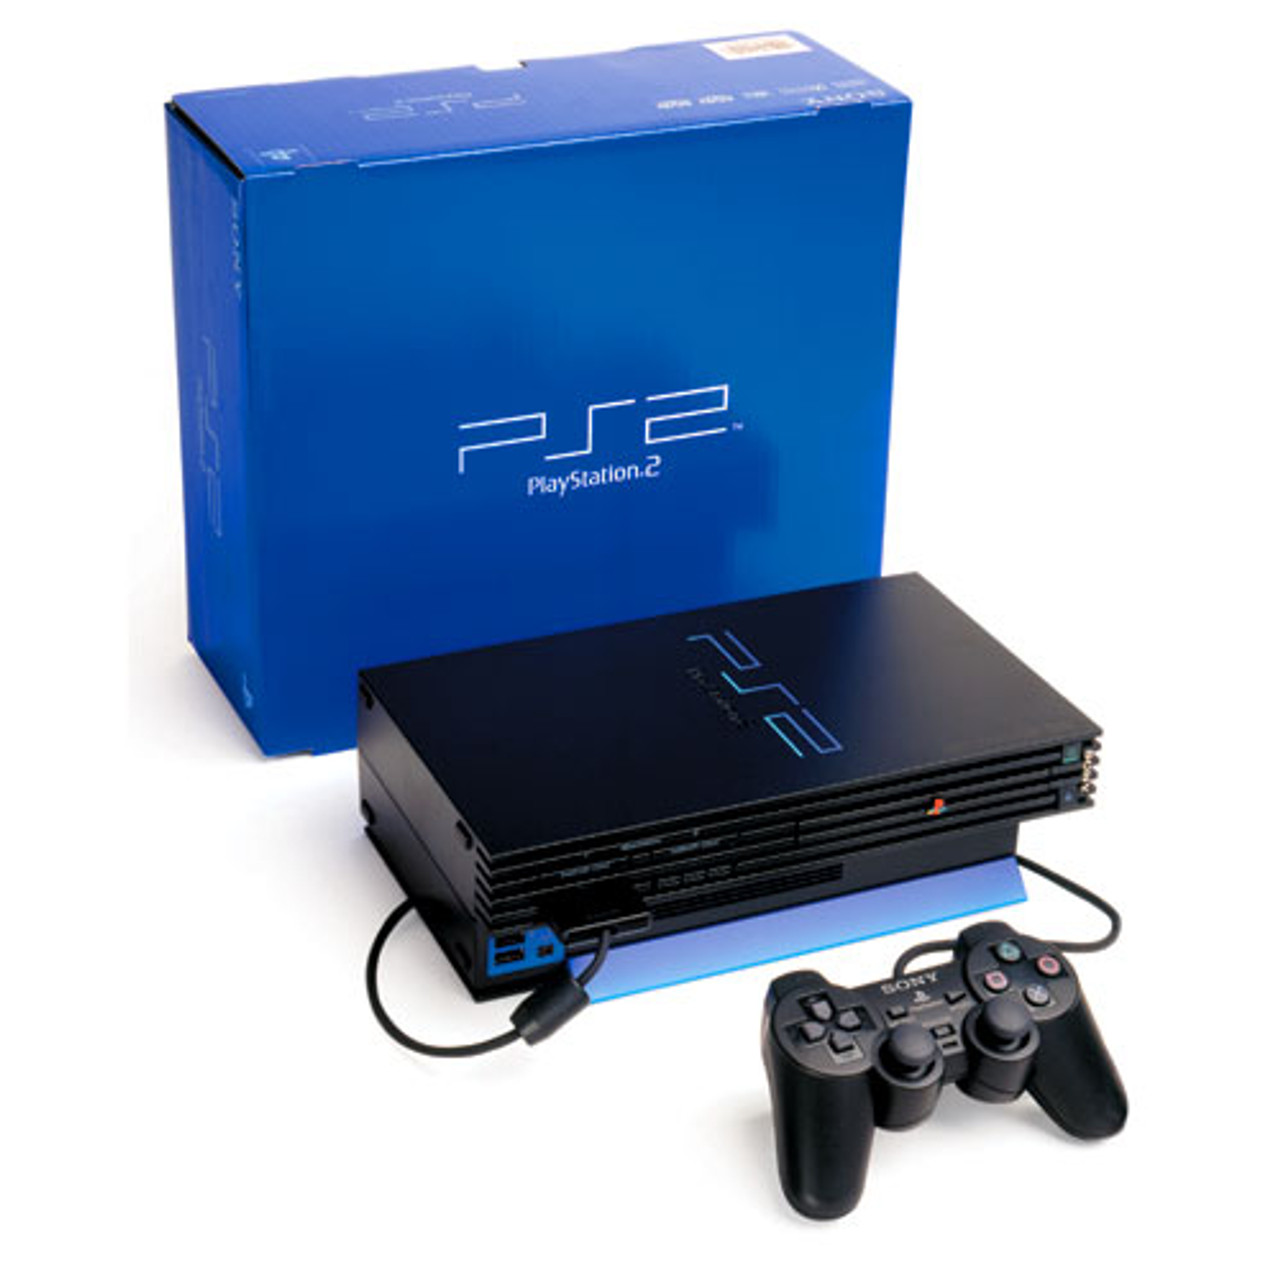 PS2 slim console complete in original box